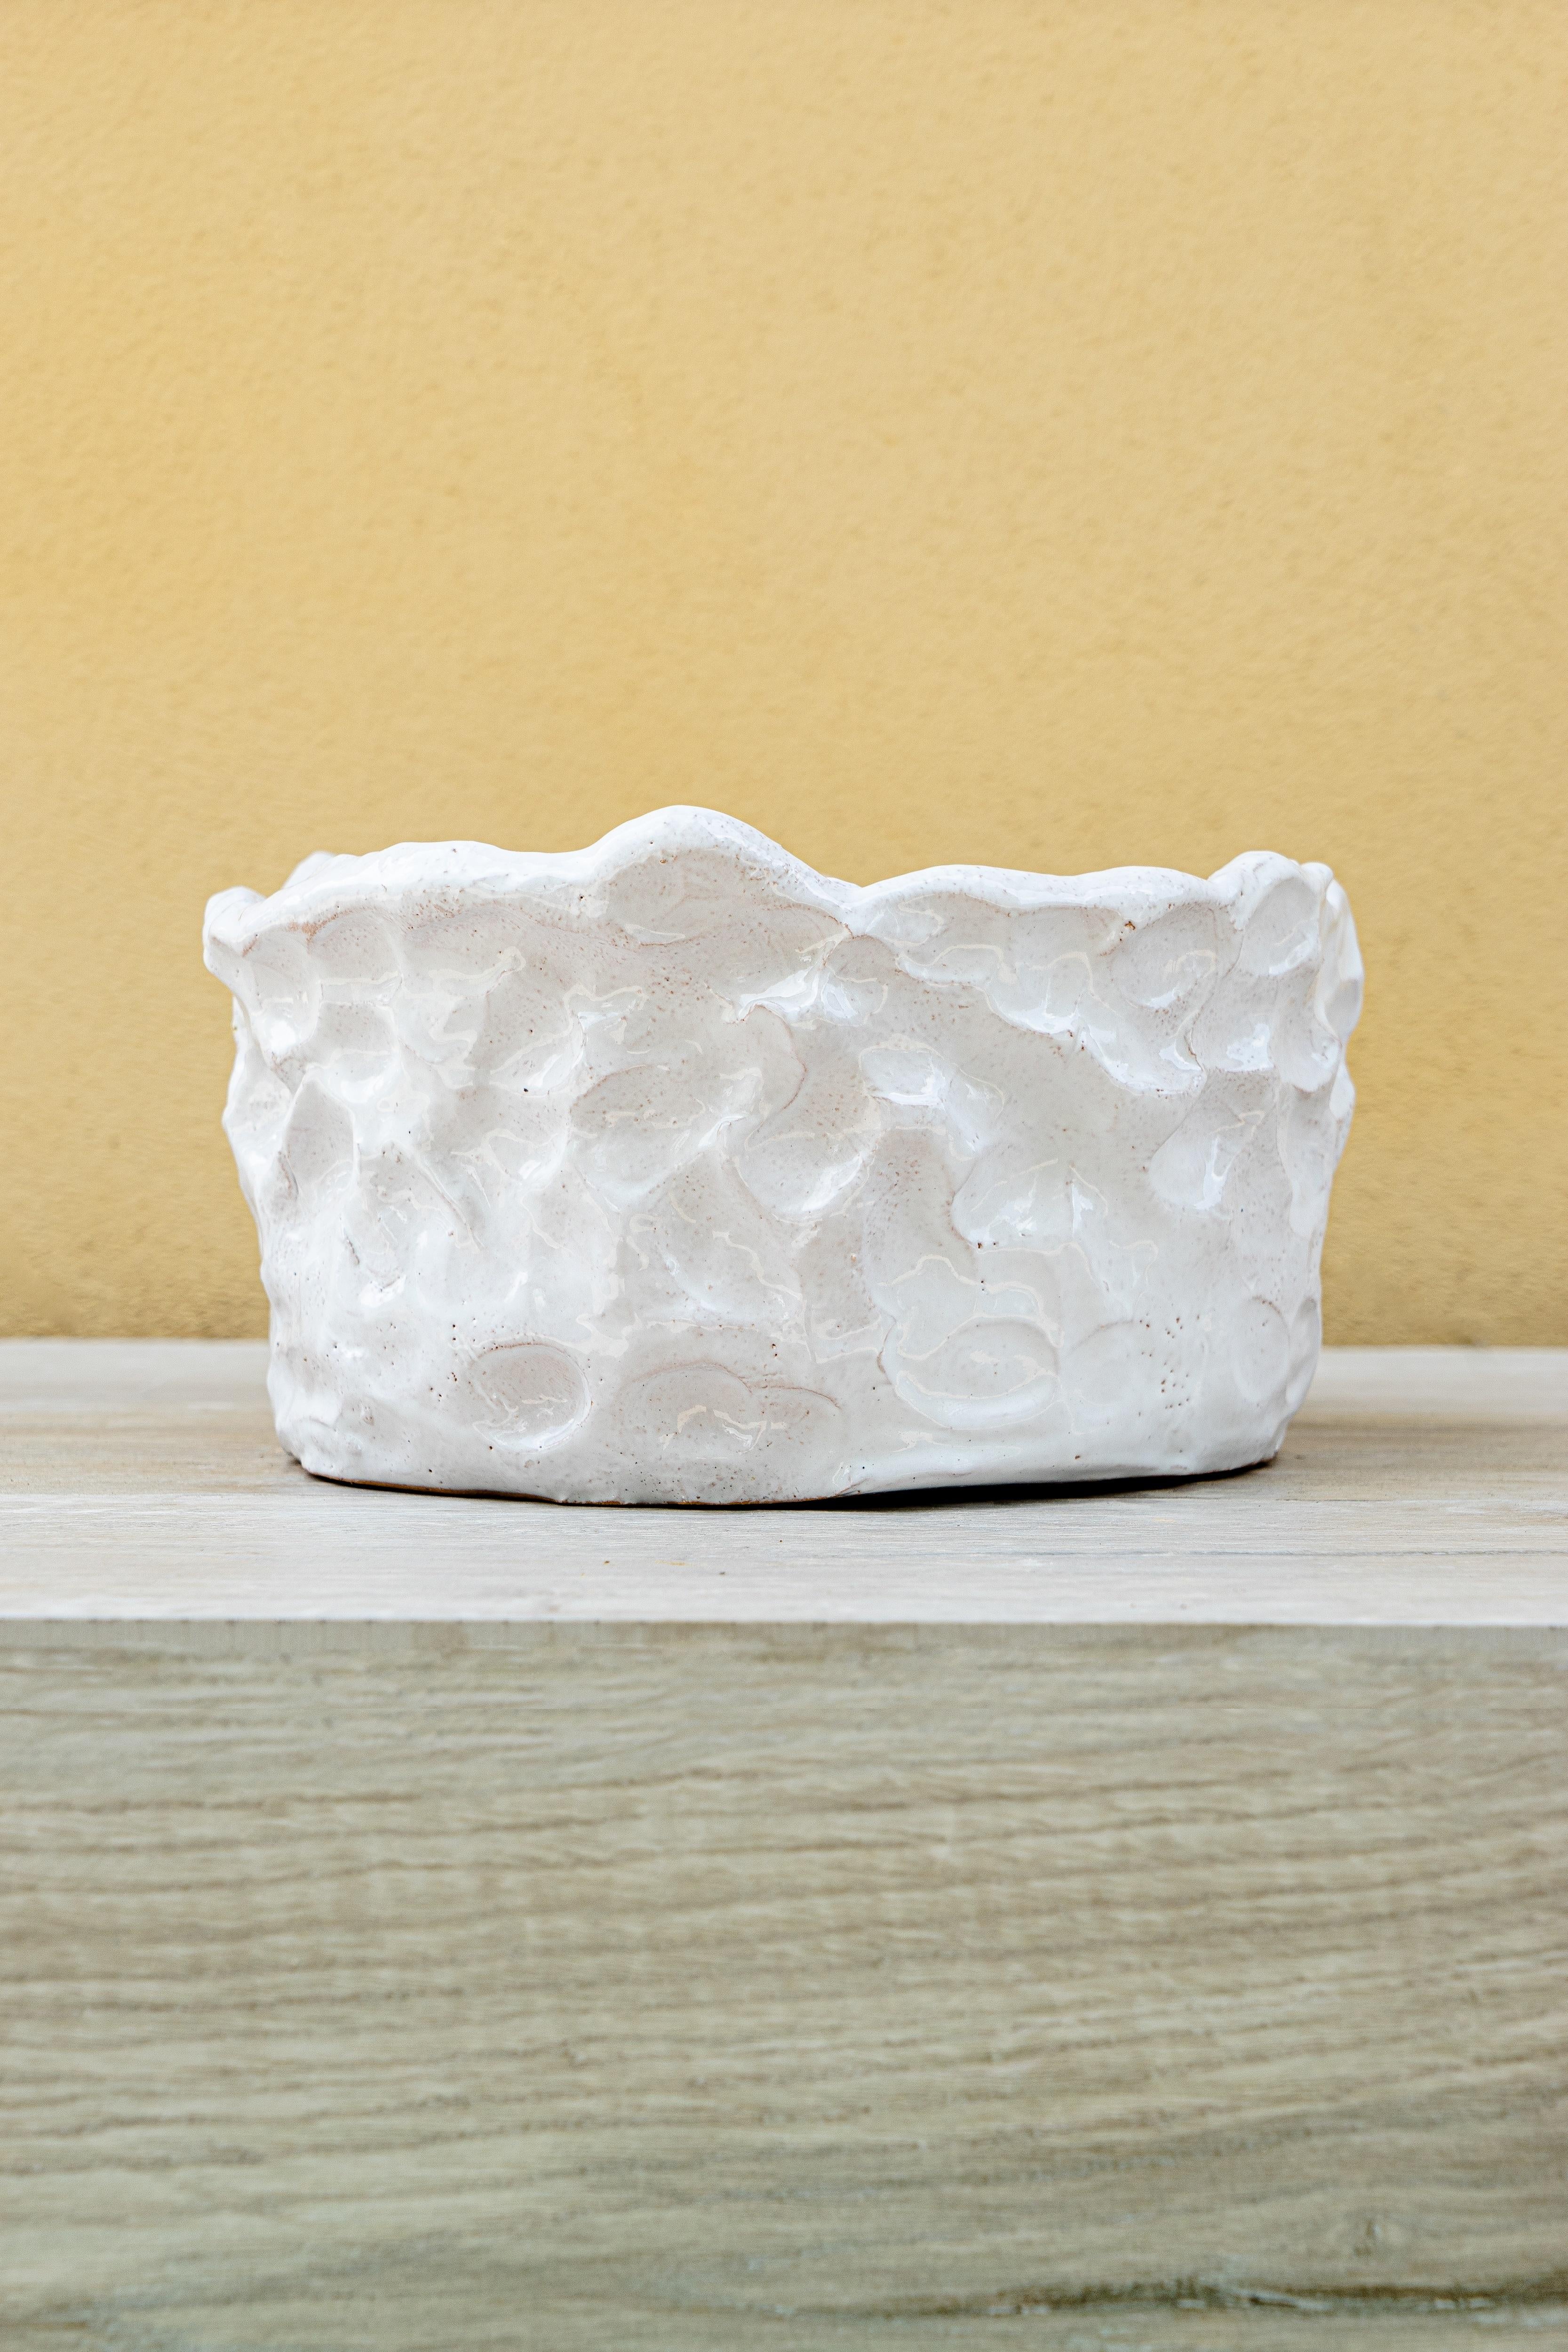 Vase blanc de Daniele Giannetti
Dimensions : Ø 30 x H 16 cm.
Matériaux : terre cuite émaillée. 

Toutes les pièces sont réalisées en terre cuite de Montelupo, cuites une seule fois, puis colorées par Daniele Giannetti avec une base acrylique